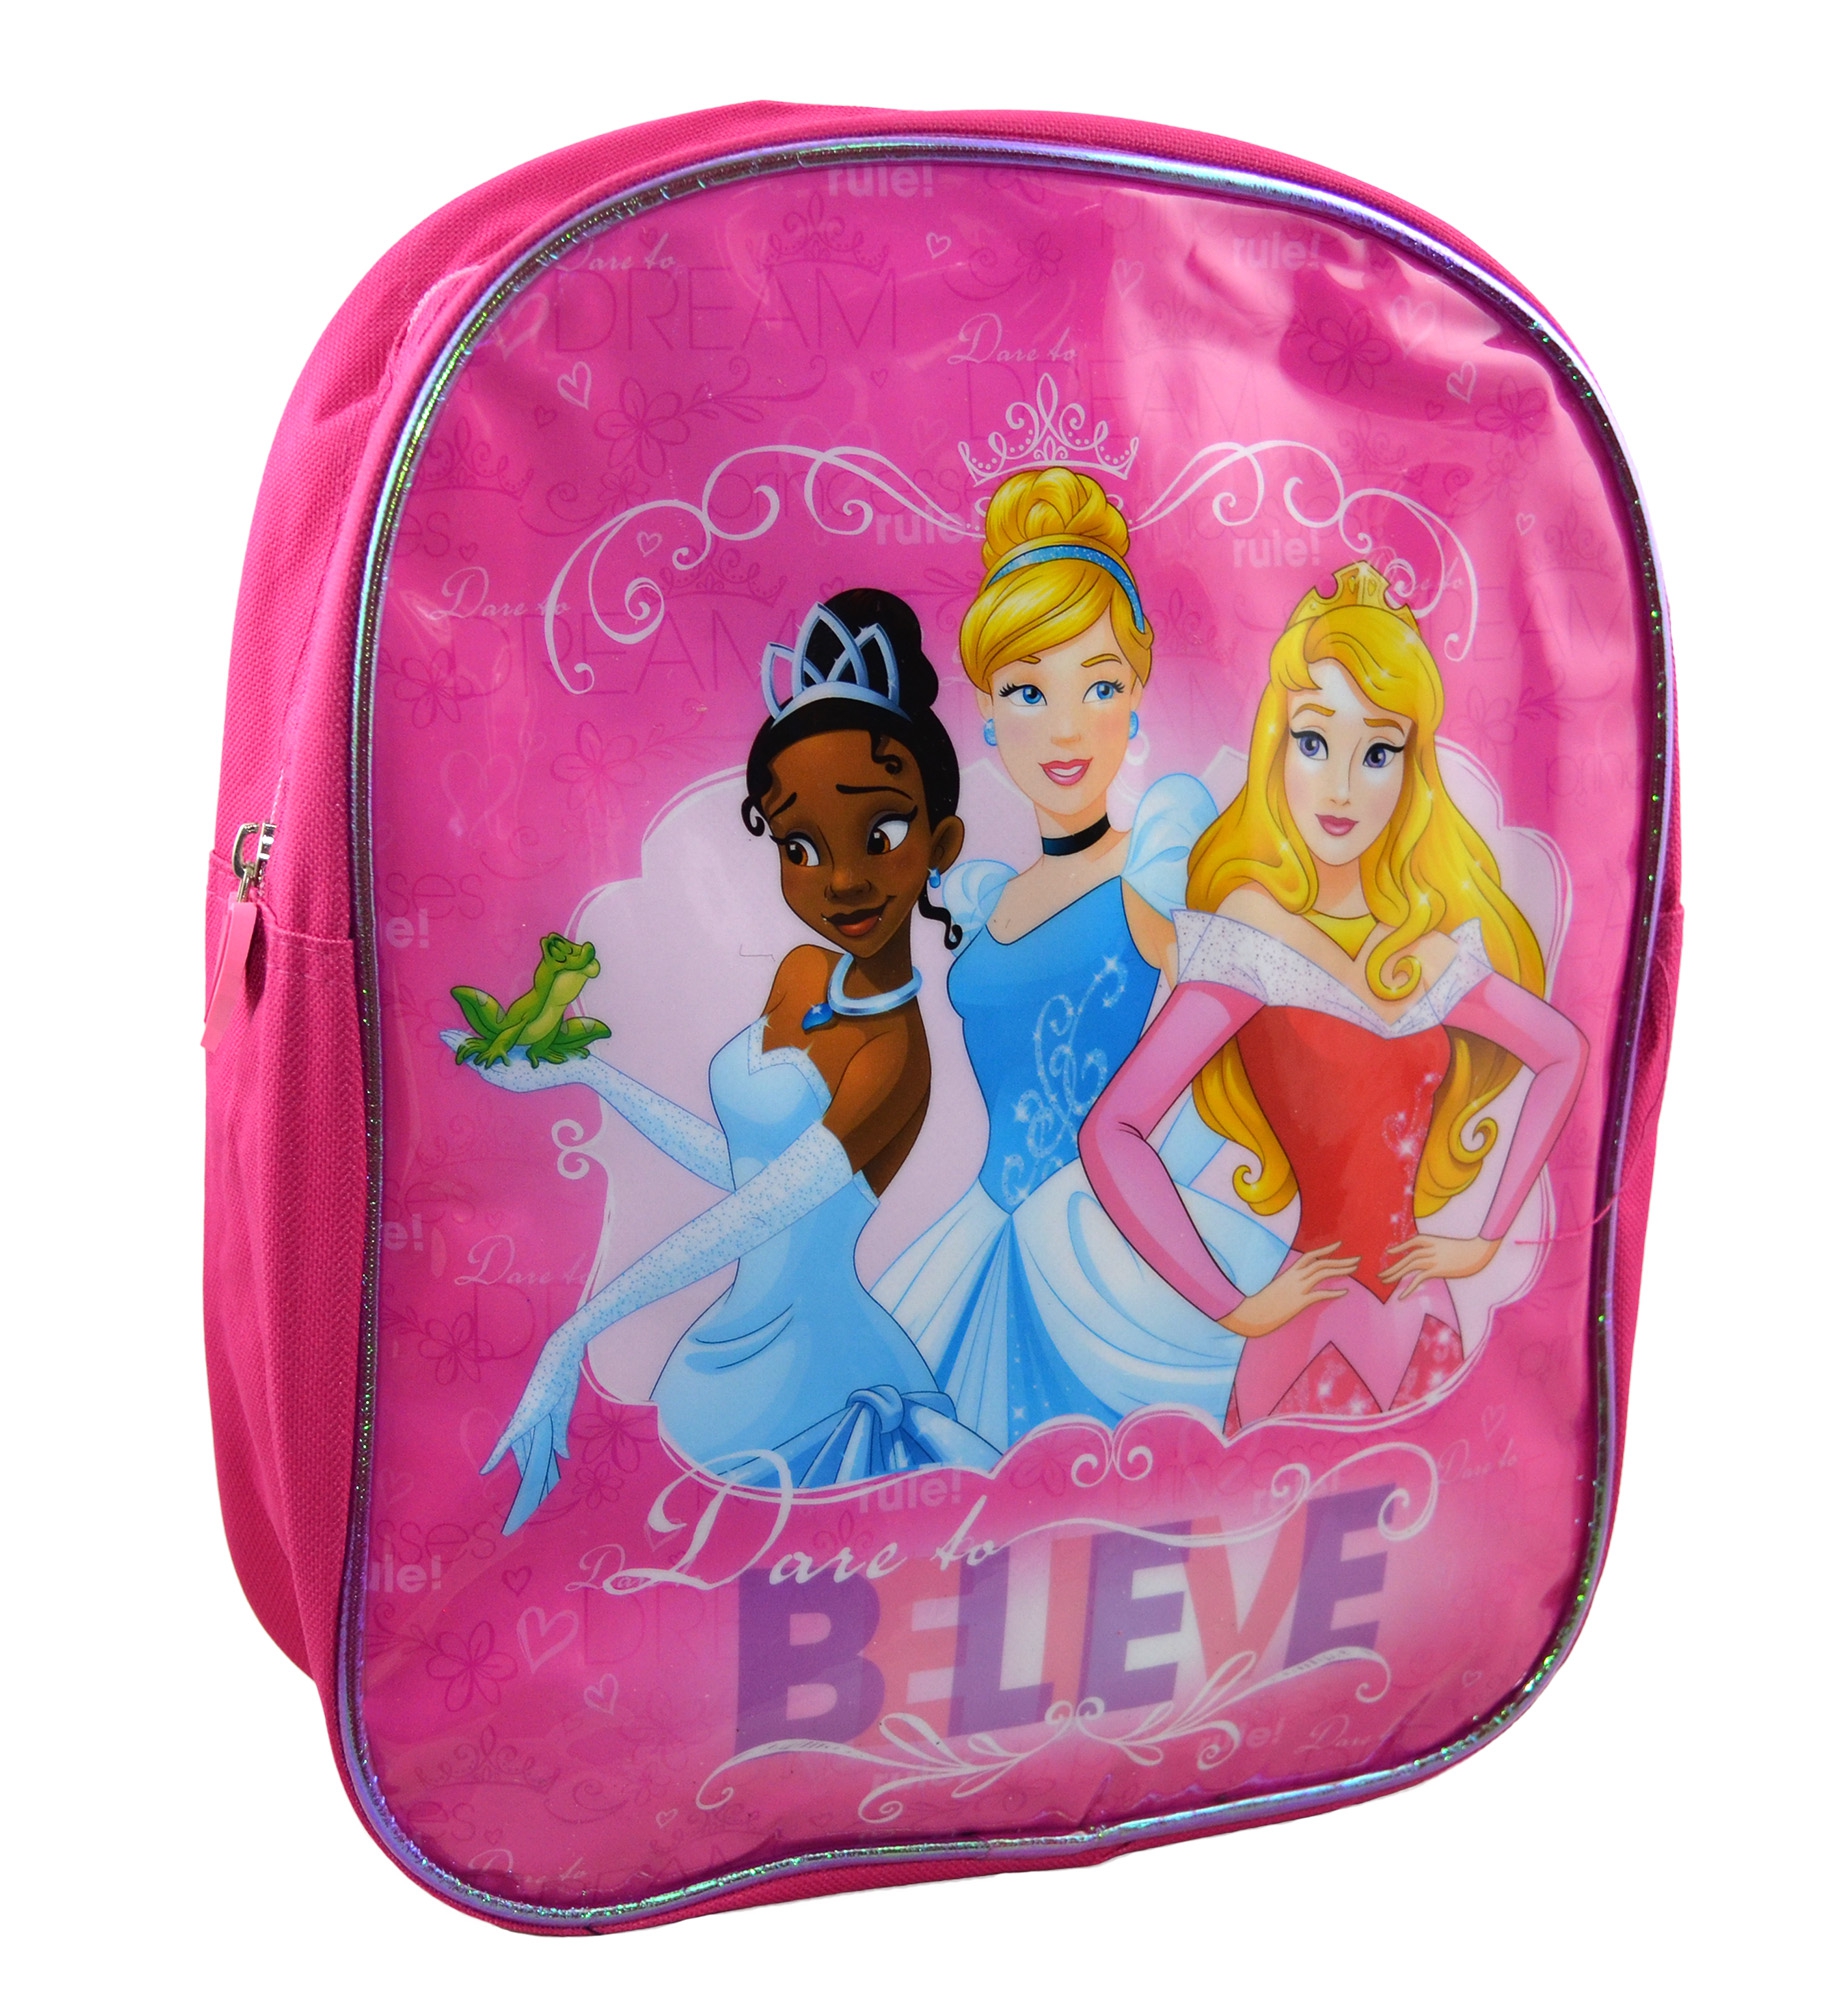 Disney Princess 'Believe' Junior School Bag Rucksack Backpack